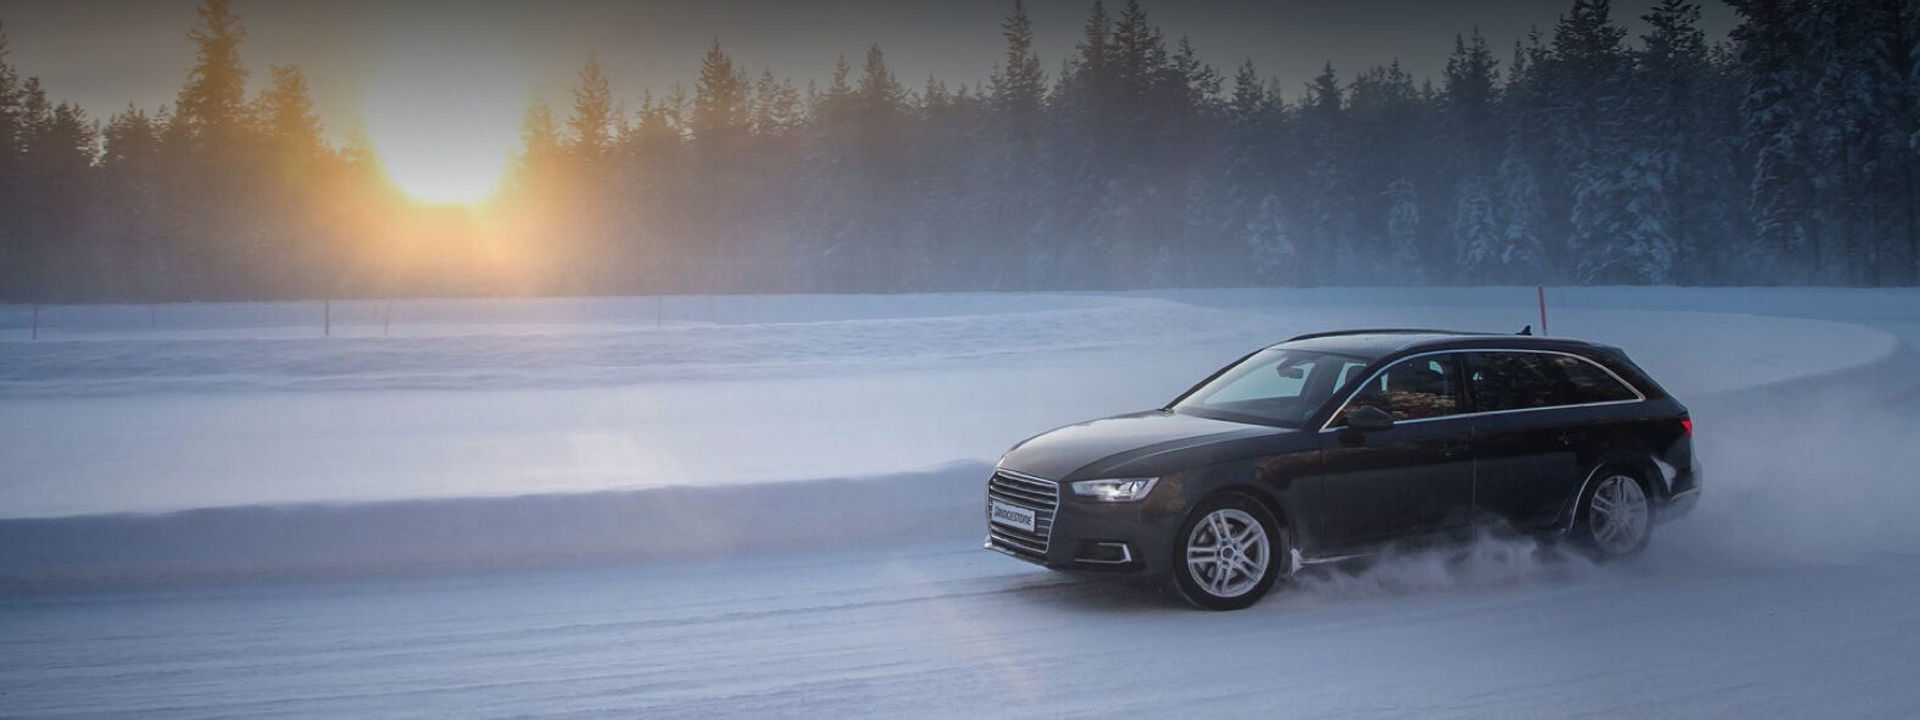 Musta Audi Blizzak LM005 -talvirenkailla kääntyy mutkassa lumikinoksen ympäri lumisella tiellä metsän keskellä. 